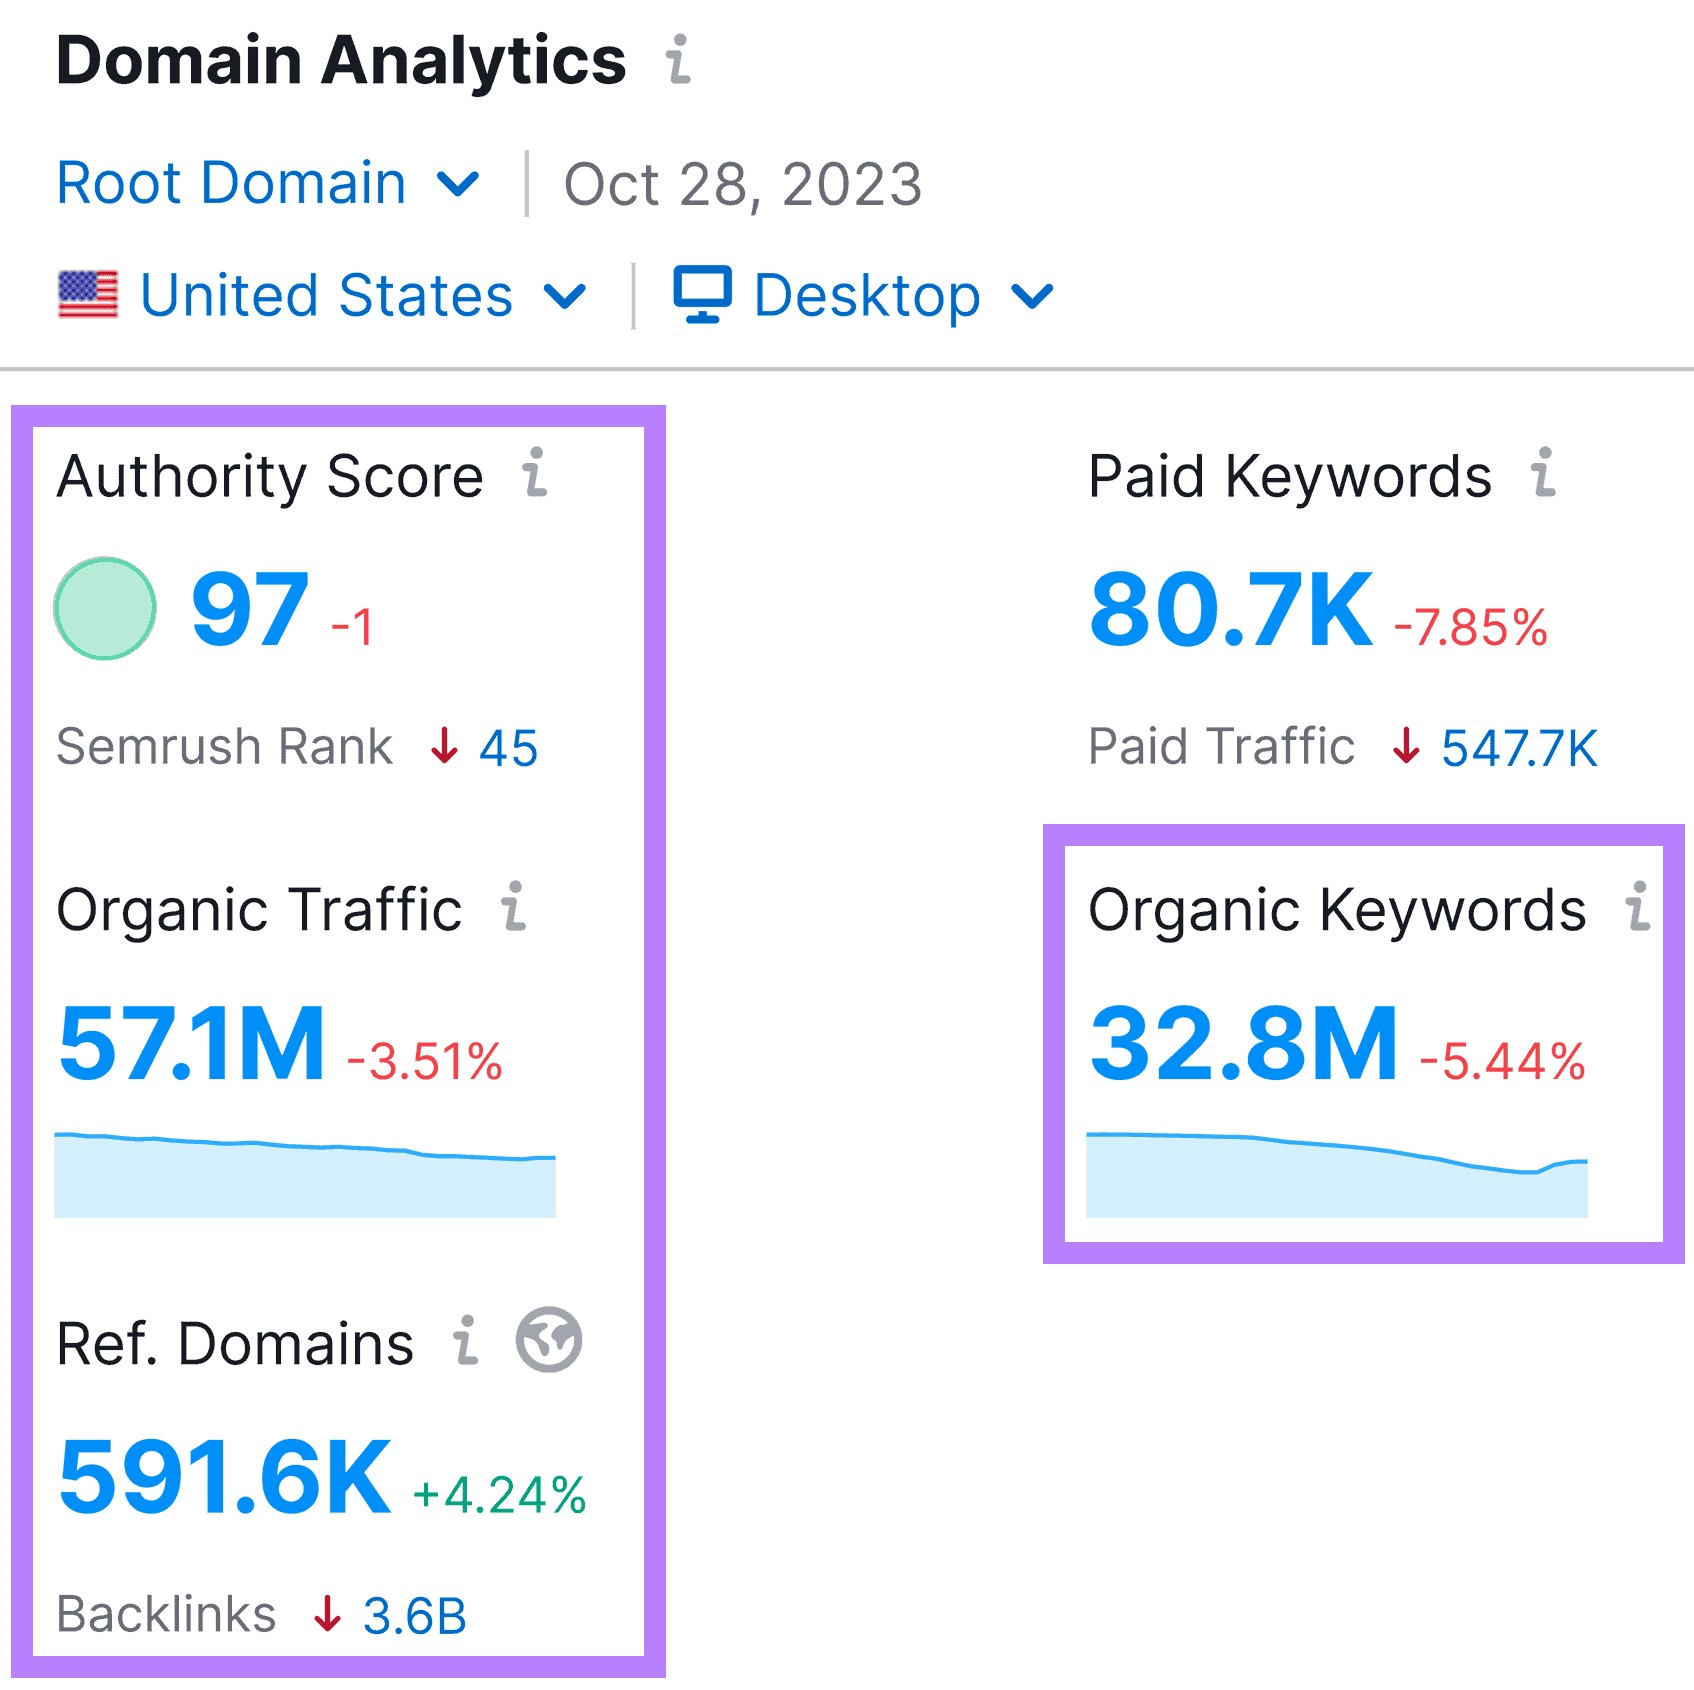 “Domain Analytics” widget overview